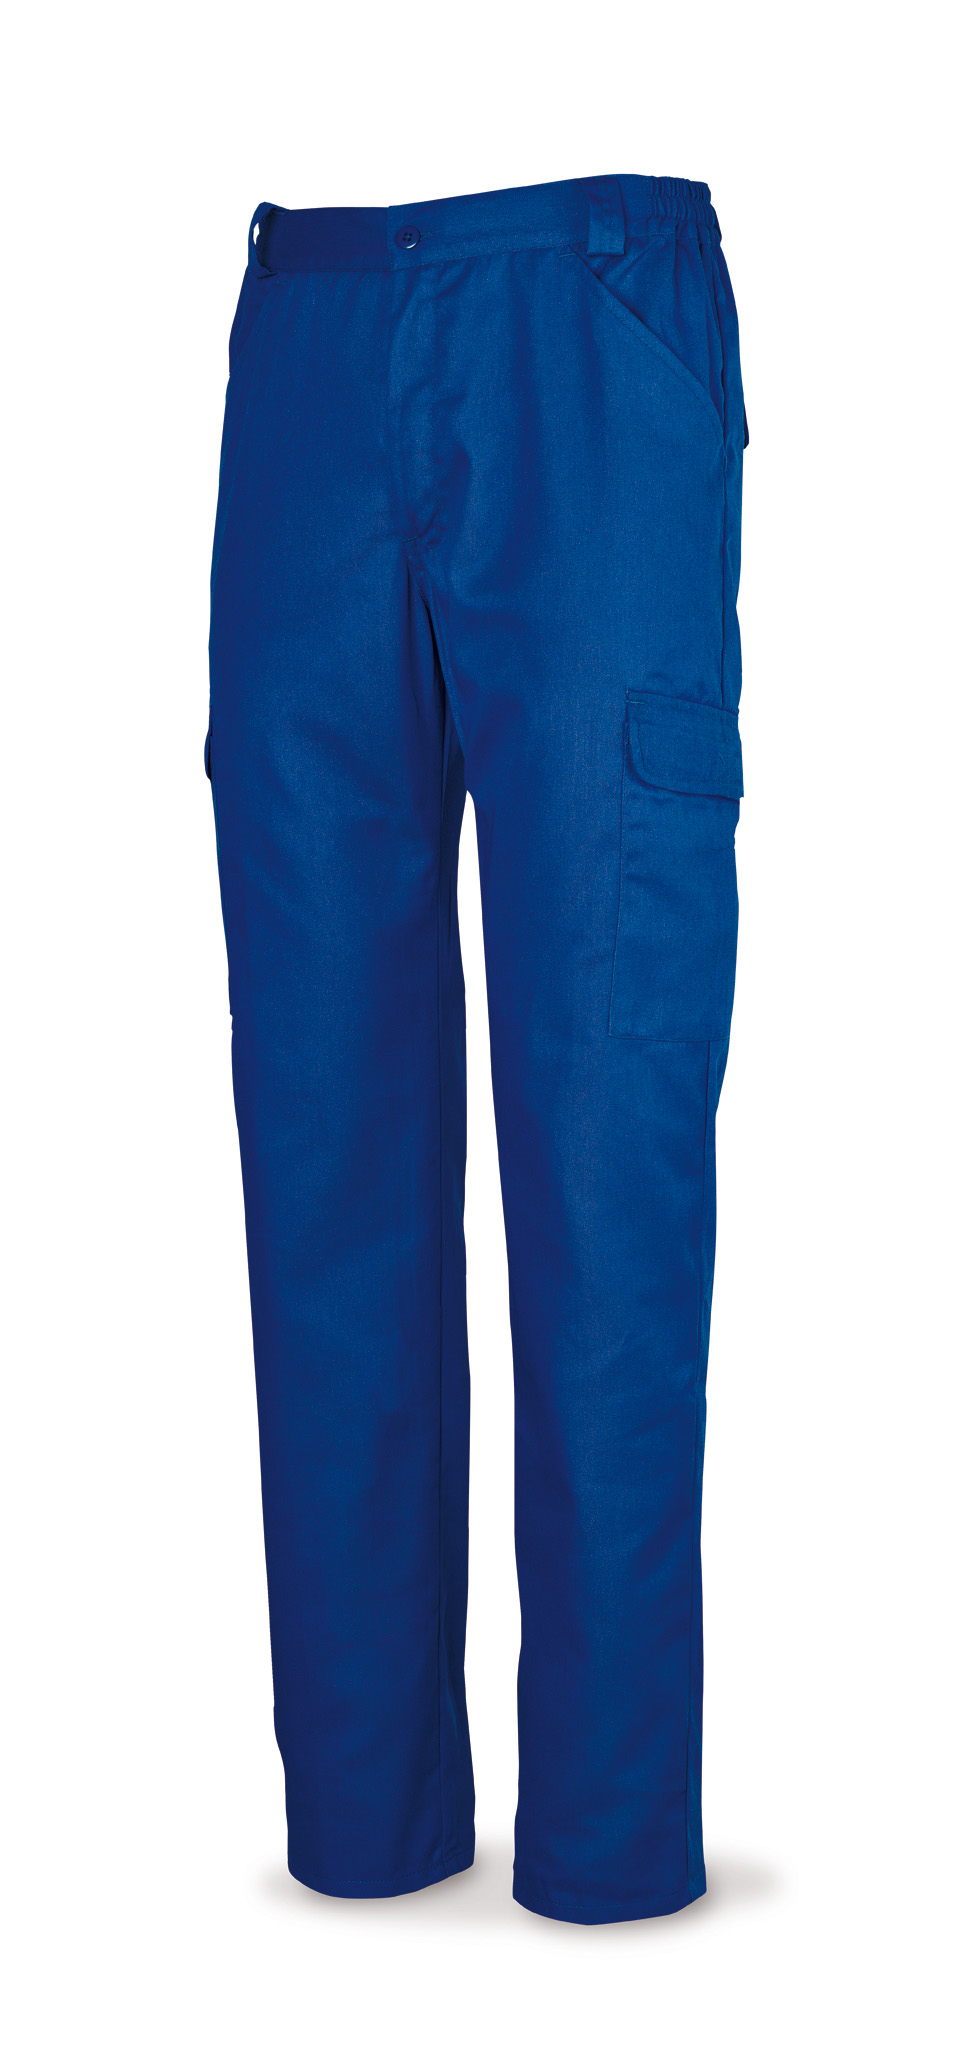 388-PE Vetements de travail laboral Série Basics Pantalon en coton bleu 200 g. Multi-poches.